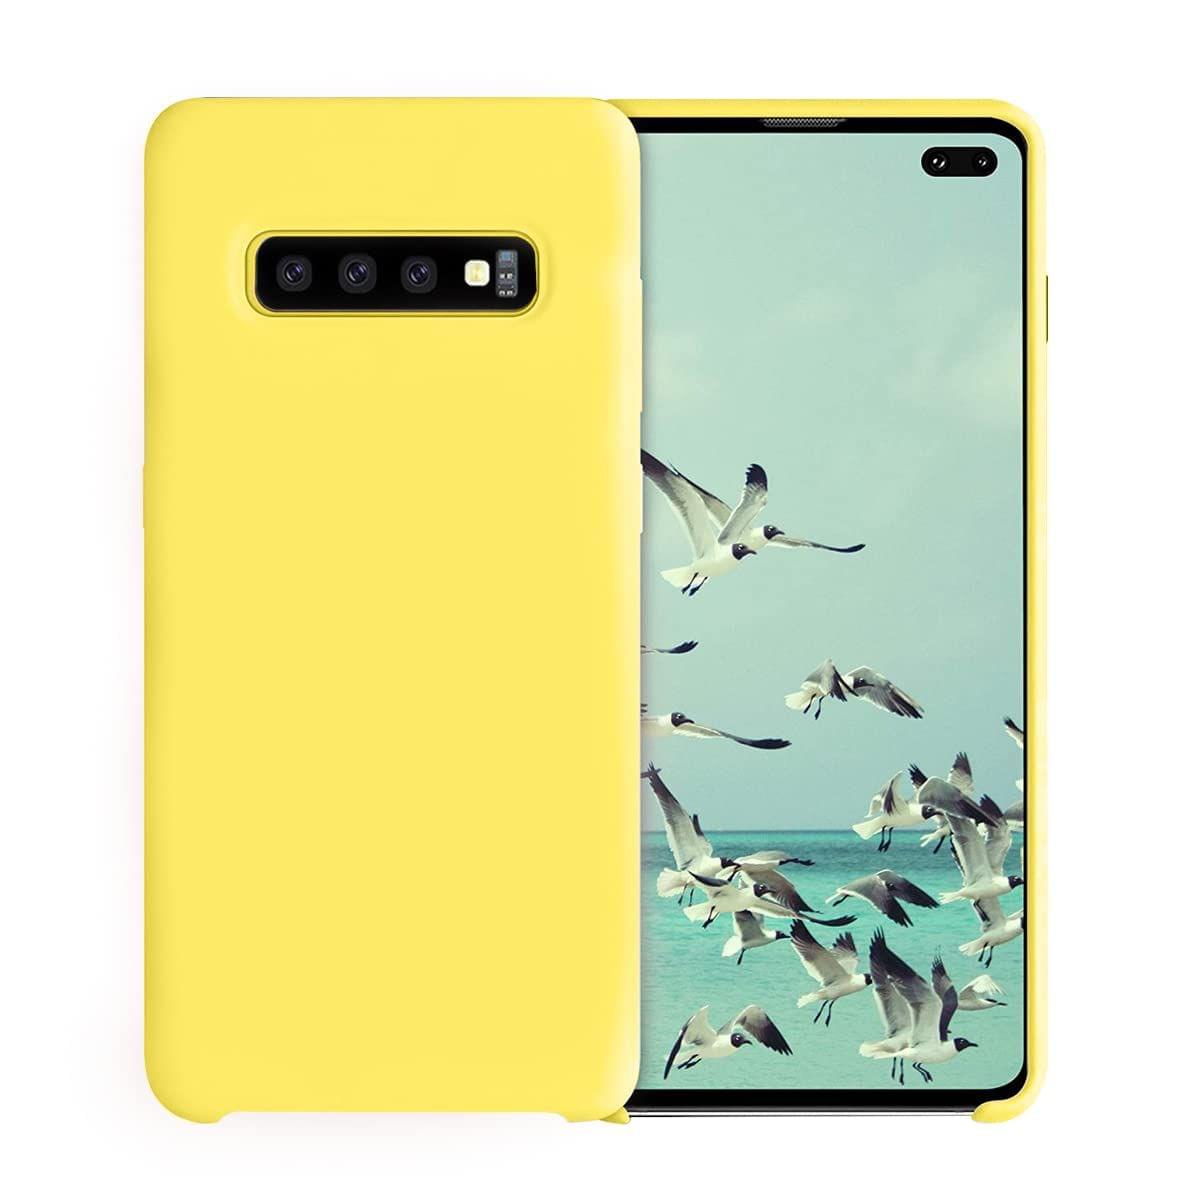 LIRAMARK Liquid Silicone Soft Back Cover Case for Samsung Galaxy S10 Plus / S10+ (Yellow)